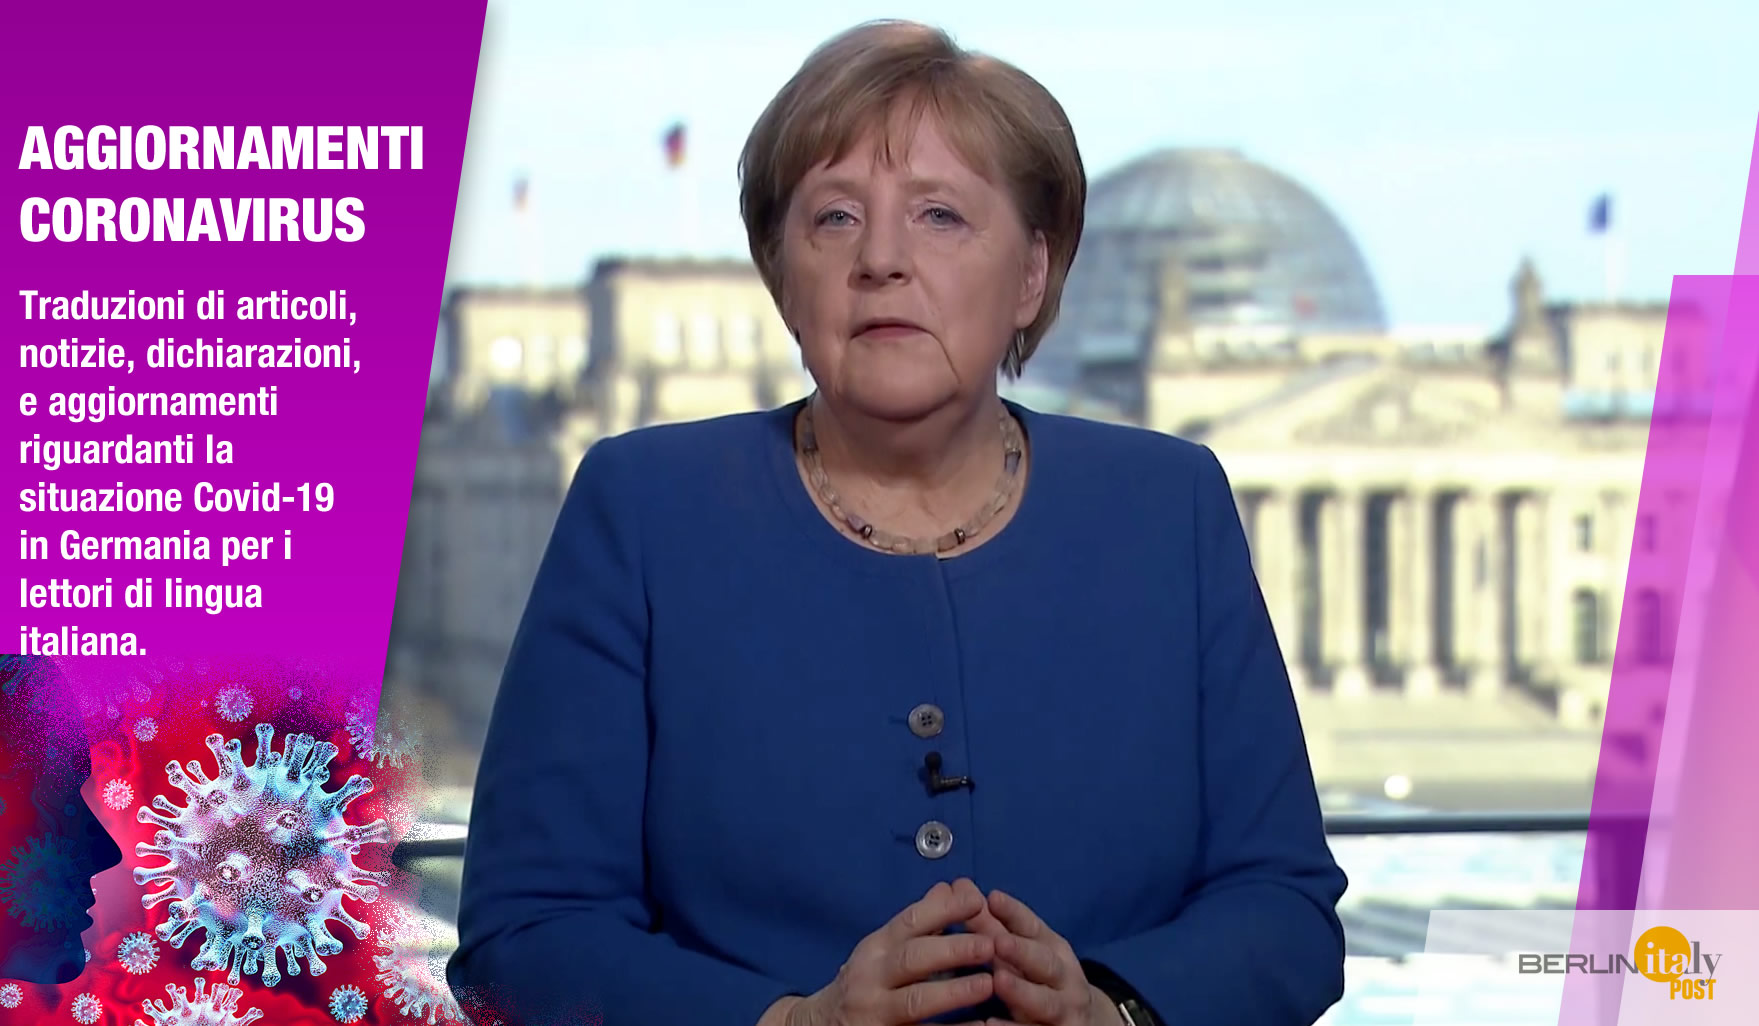 Traduzione del discorso della Cancelliera Angela Merkel del 18.03.2020